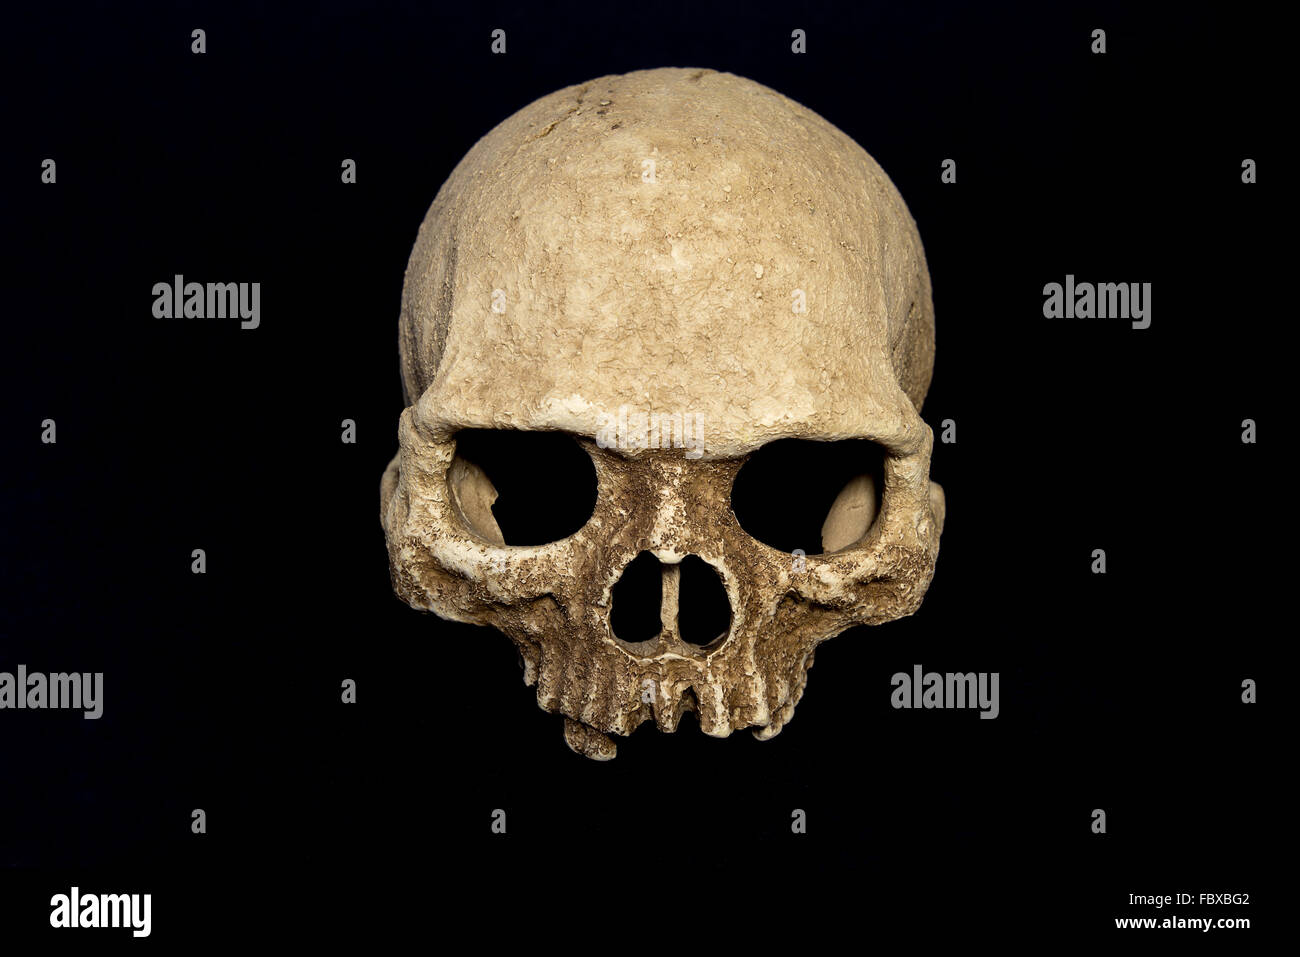 Fundición de resina, cráneo humano cráneo primate en aislar el fondo negro Foto de stock